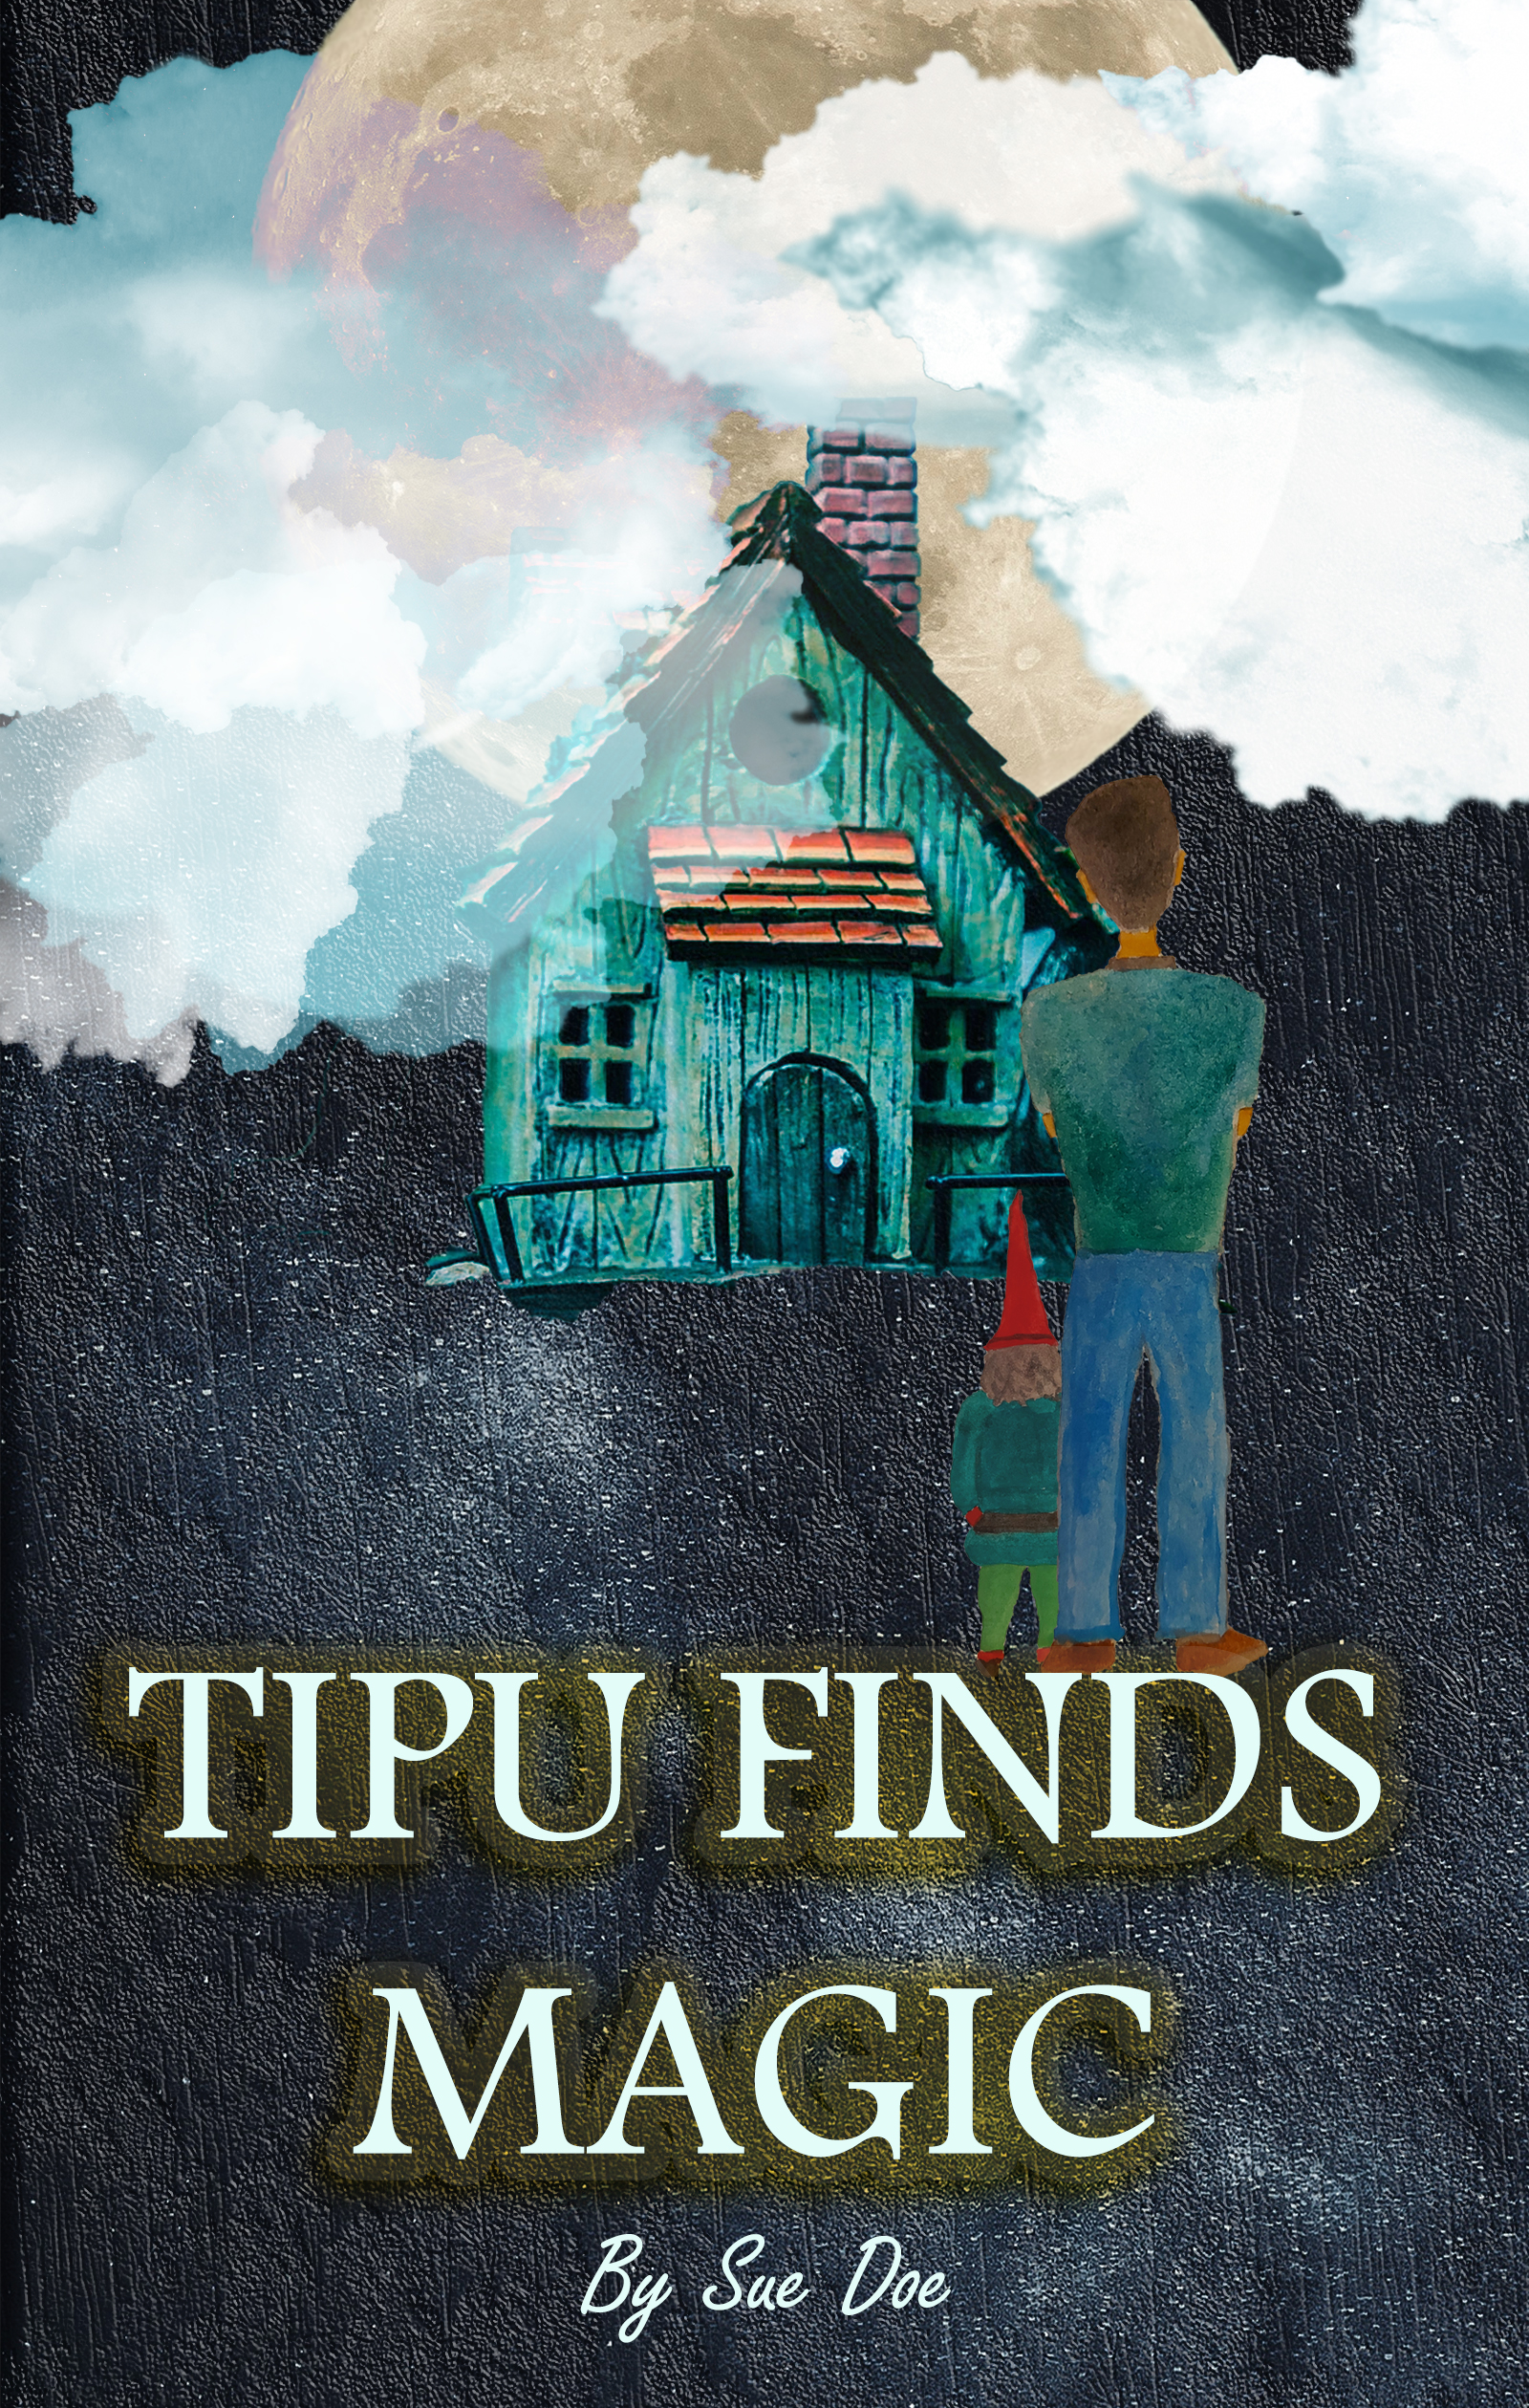 FREE: Tipu Finds Magic by Sue Doe